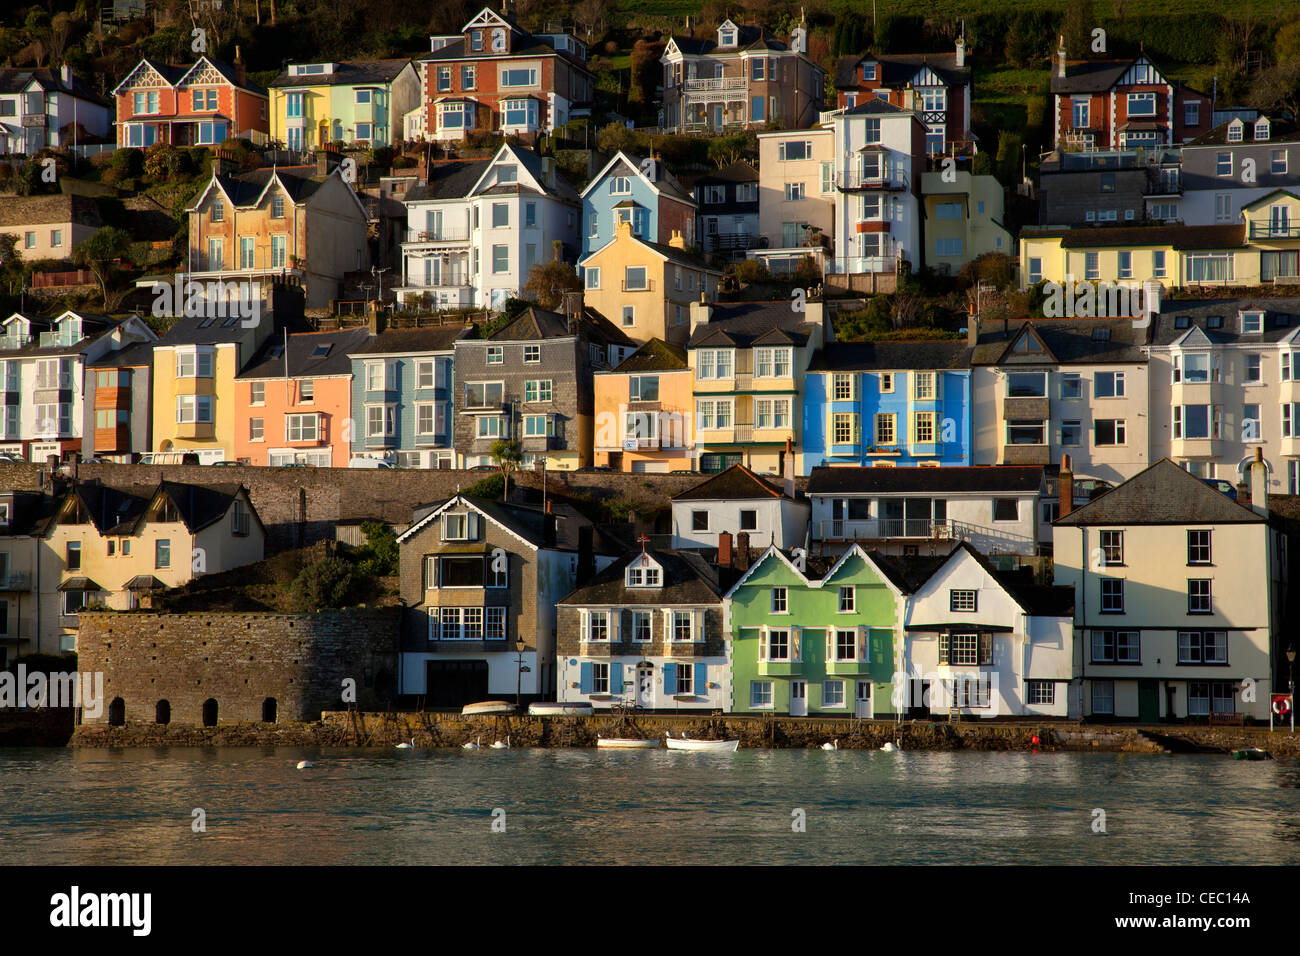 Baynards Cove et maisons colorées de la ville de Dartmouth ville de l'estuaire de la rivière Dart, South Hams, Devon, Angleterre Banque D'Images